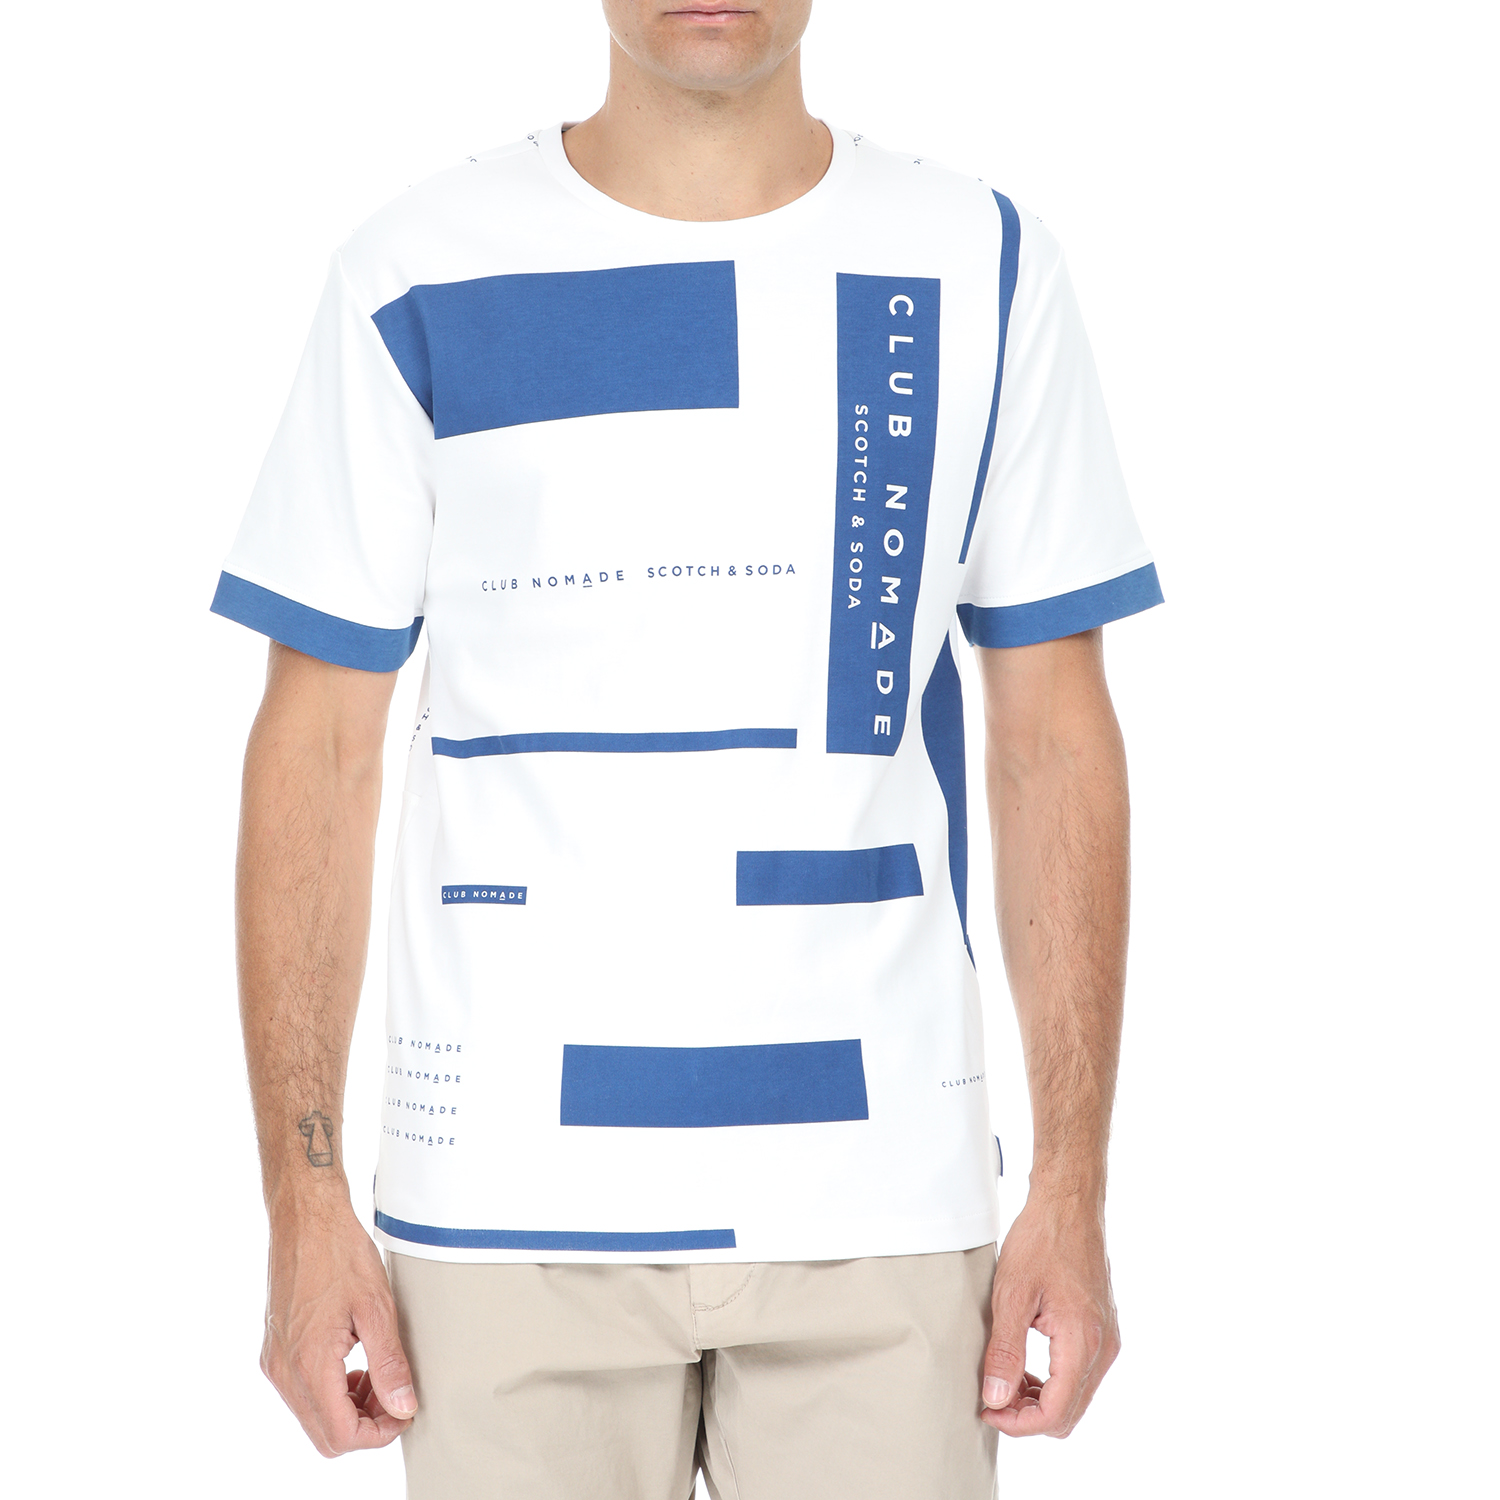 Ανδρικά/Ρούχα/Μπλούζες/Κοντομάνικες SCOTCH & SODA - Ανδρικό t-shirt SCOTCH & SODA Club Nomade λευκό μπλε